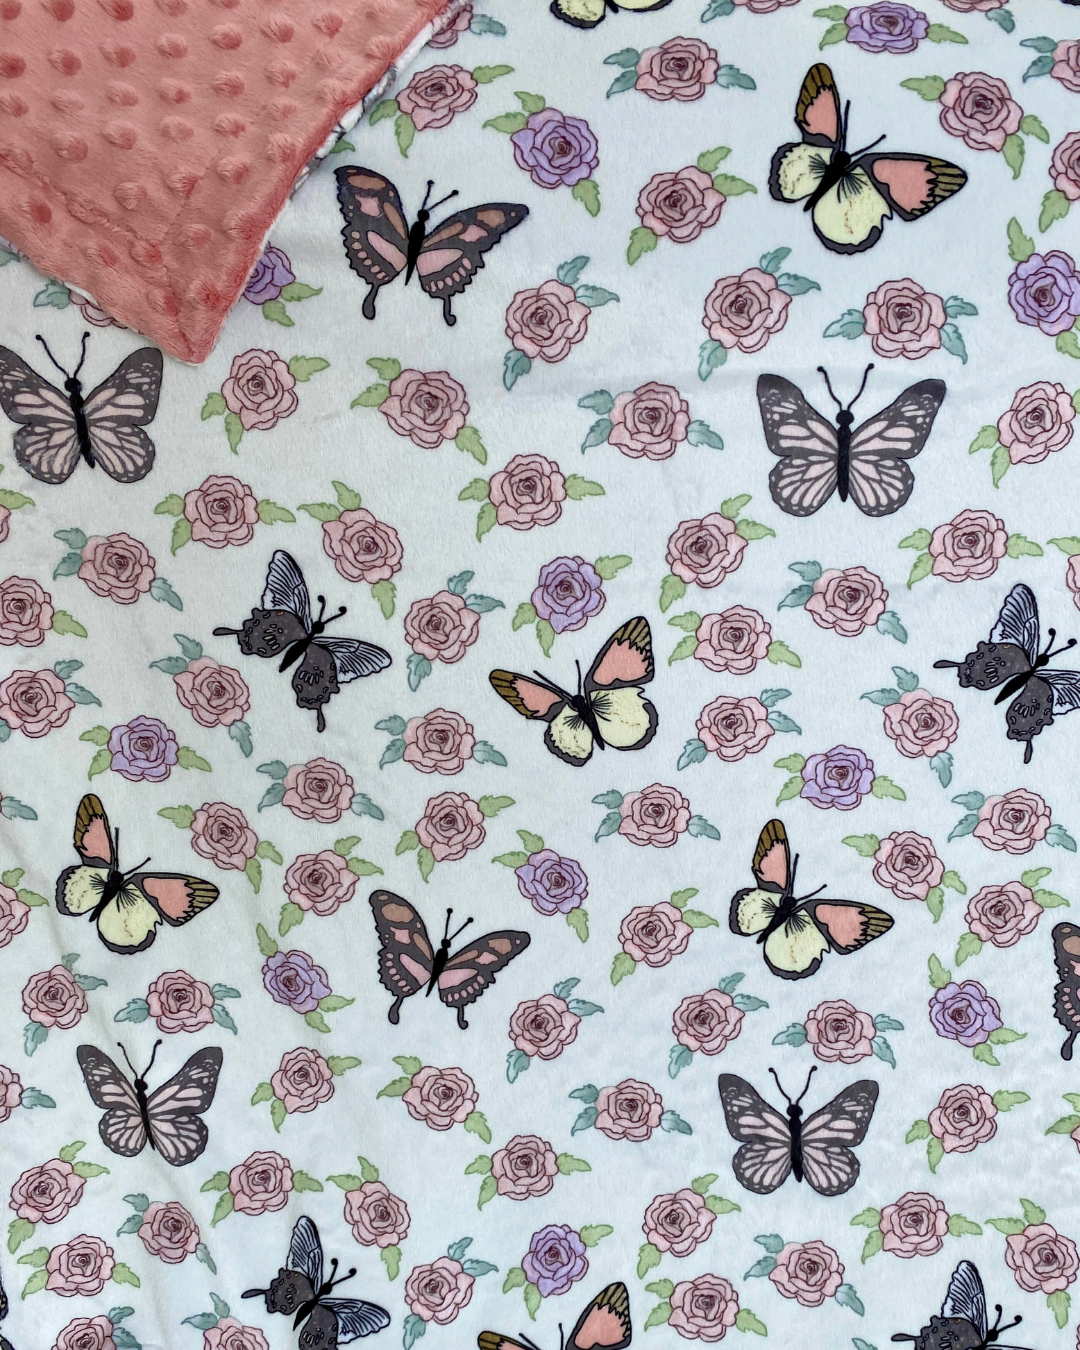 Giant Blanket: Butterflies in a rose garden (pink minky)